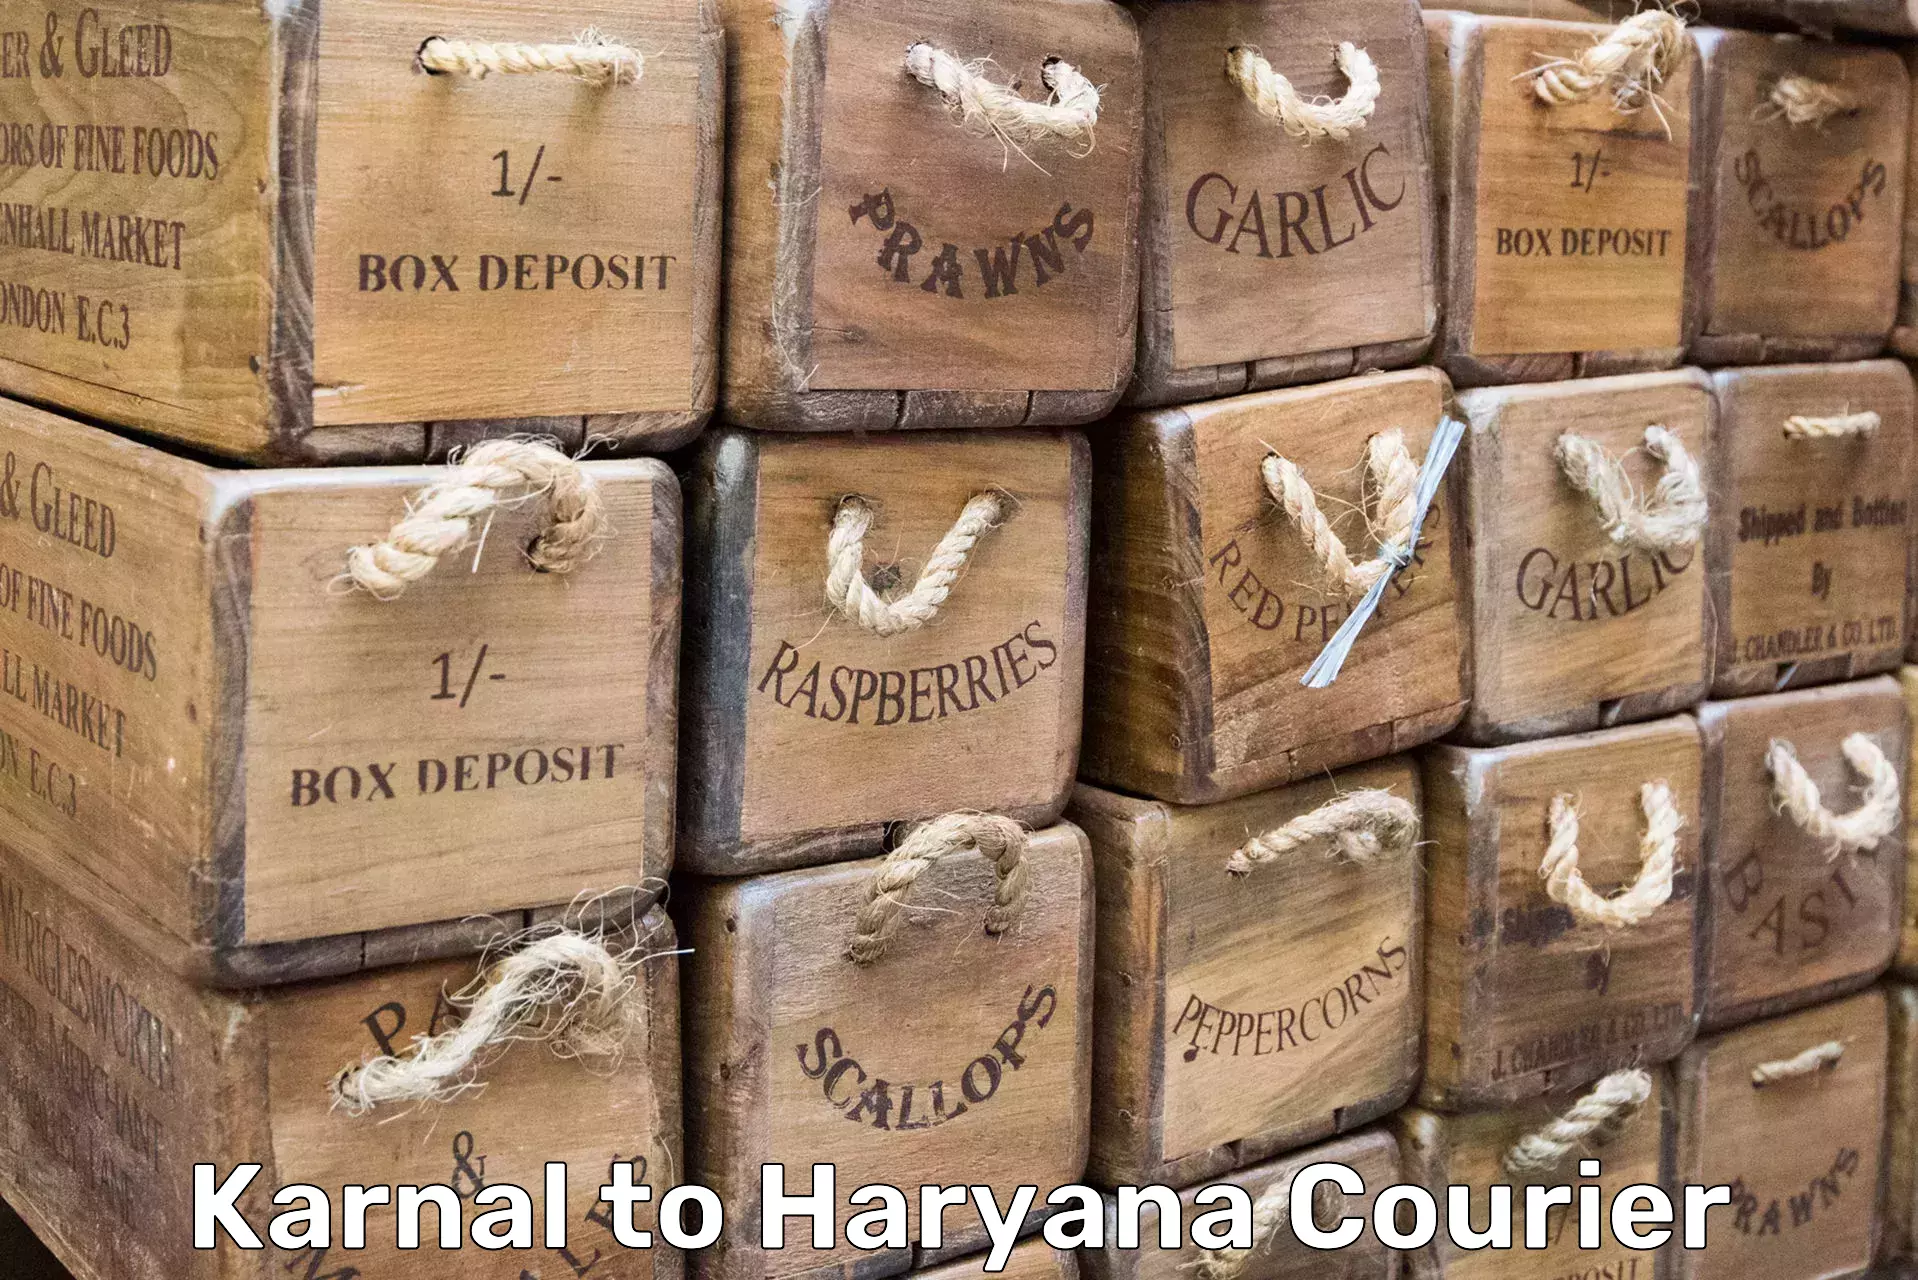 Furniture moving experts Karnal to Haryana